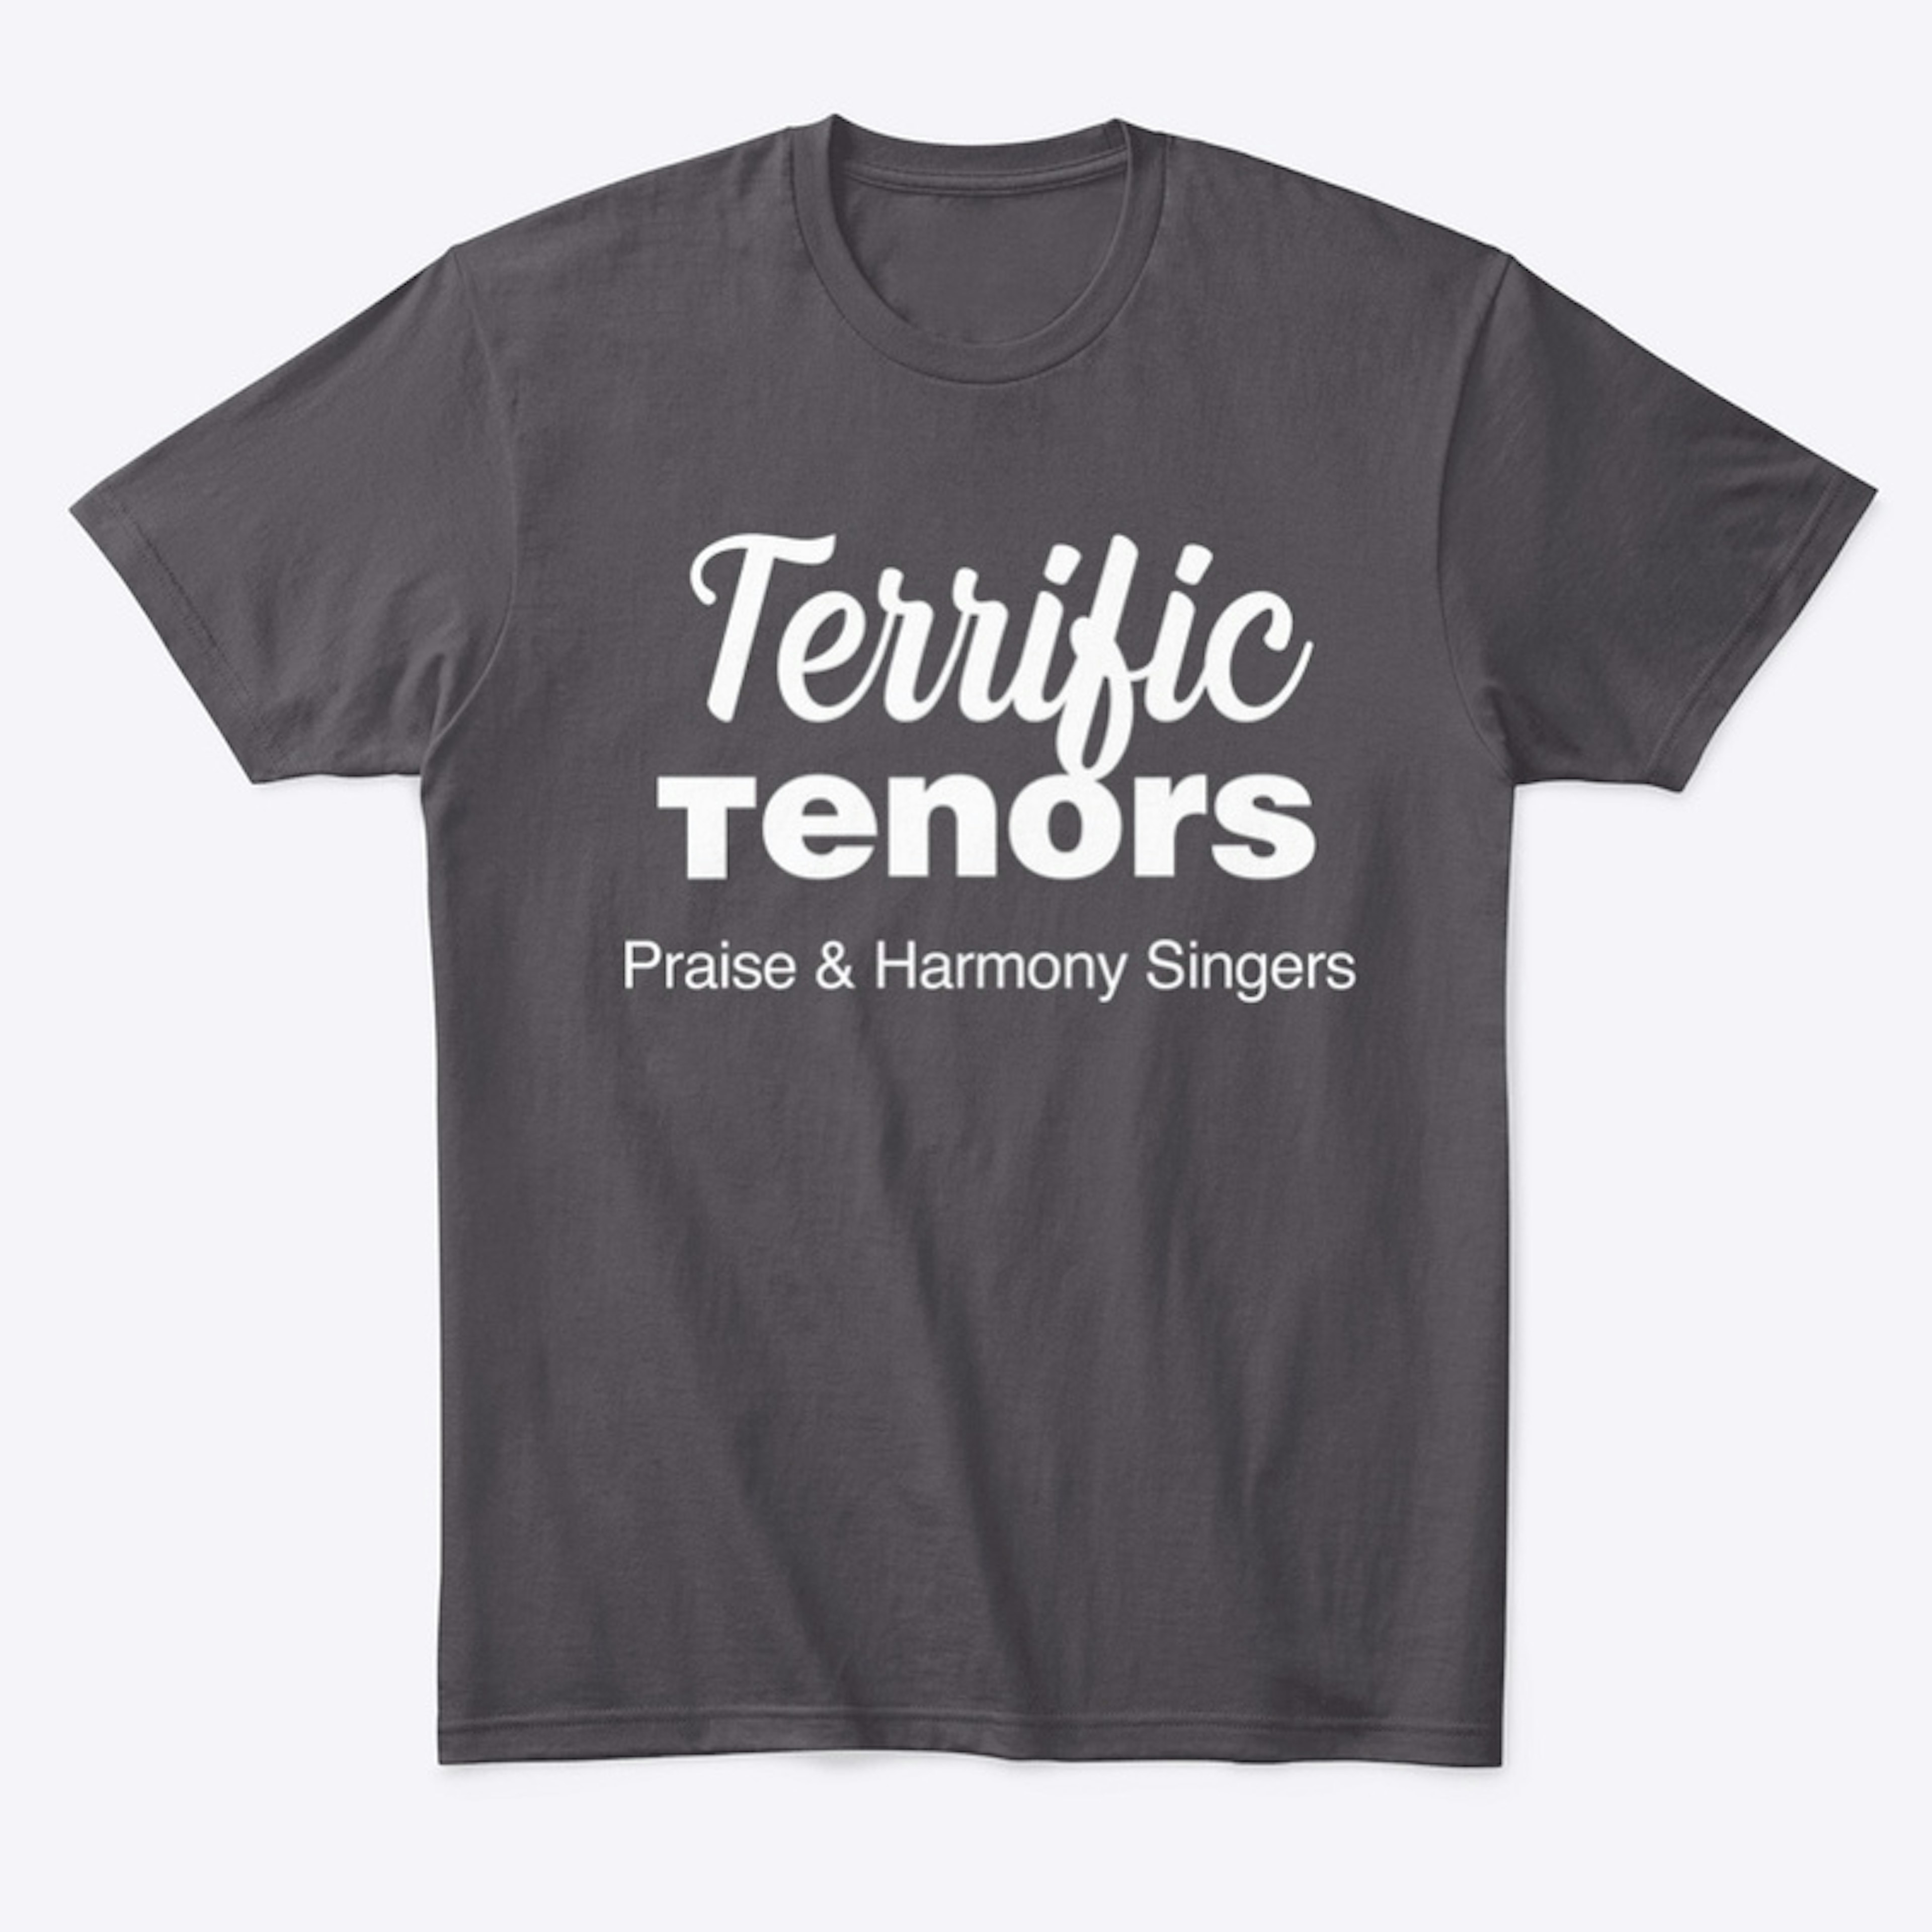 Terrific Tenors